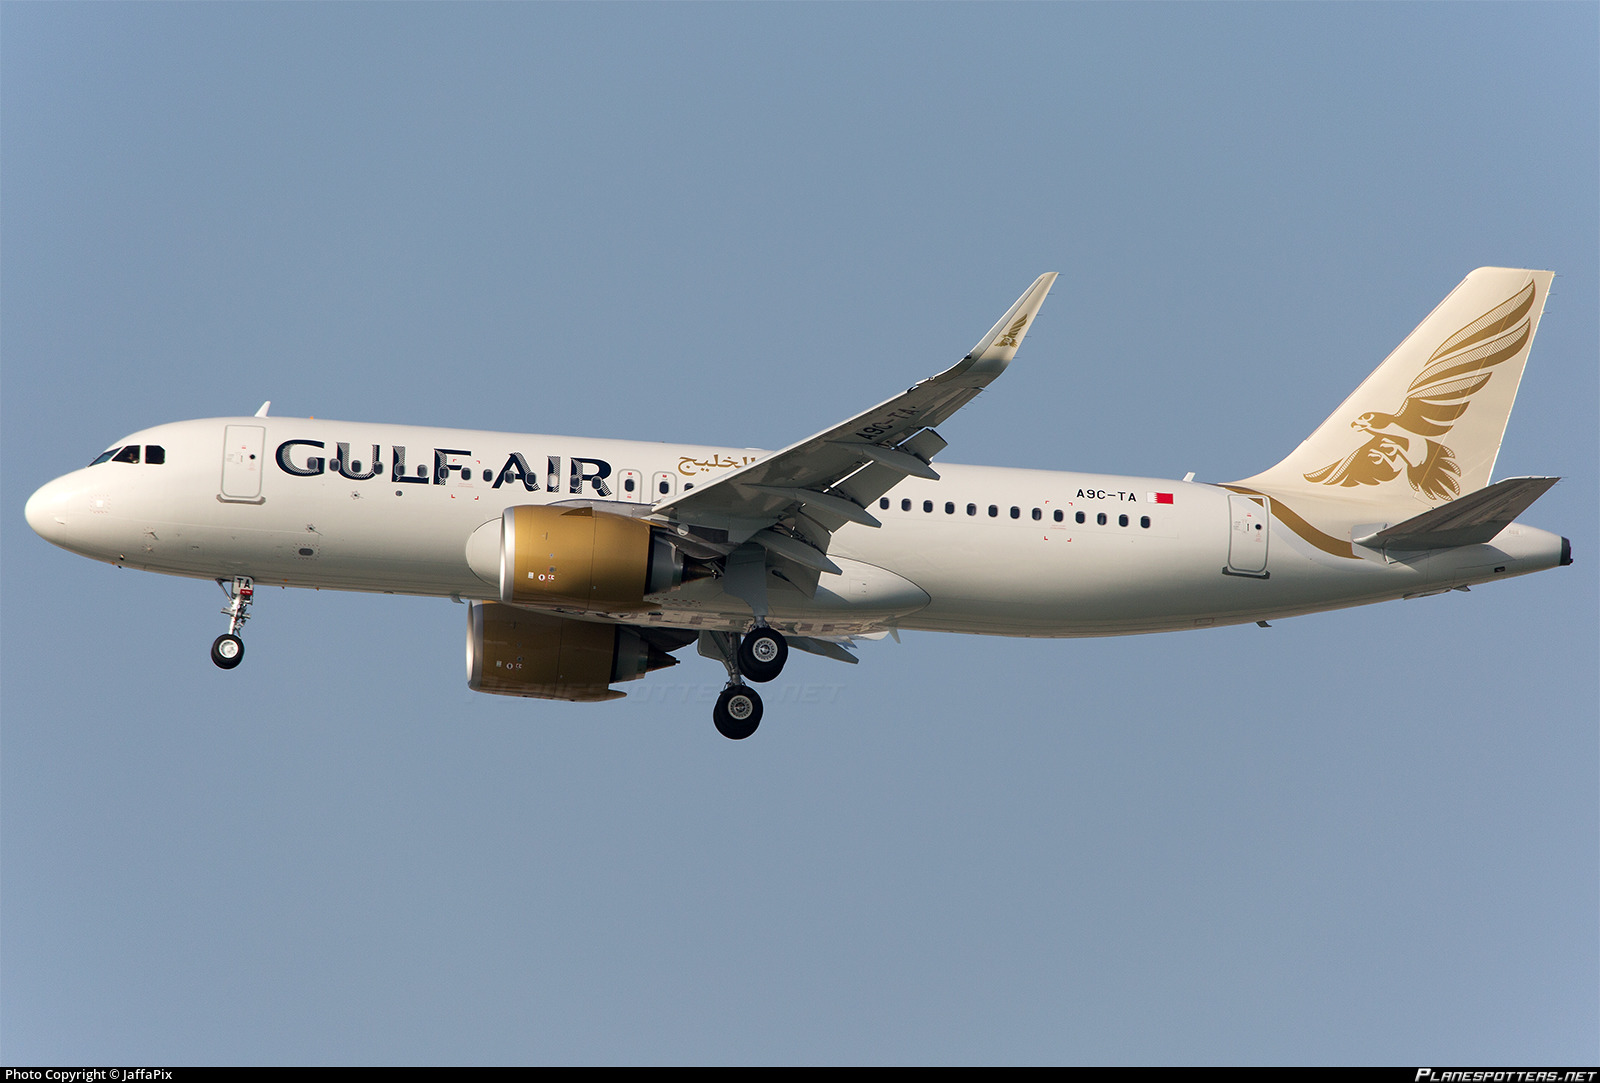 a9c-ta-gulf-air-airbus-a320-251n_PlanespottersNet_863824_8db705288c.jpg